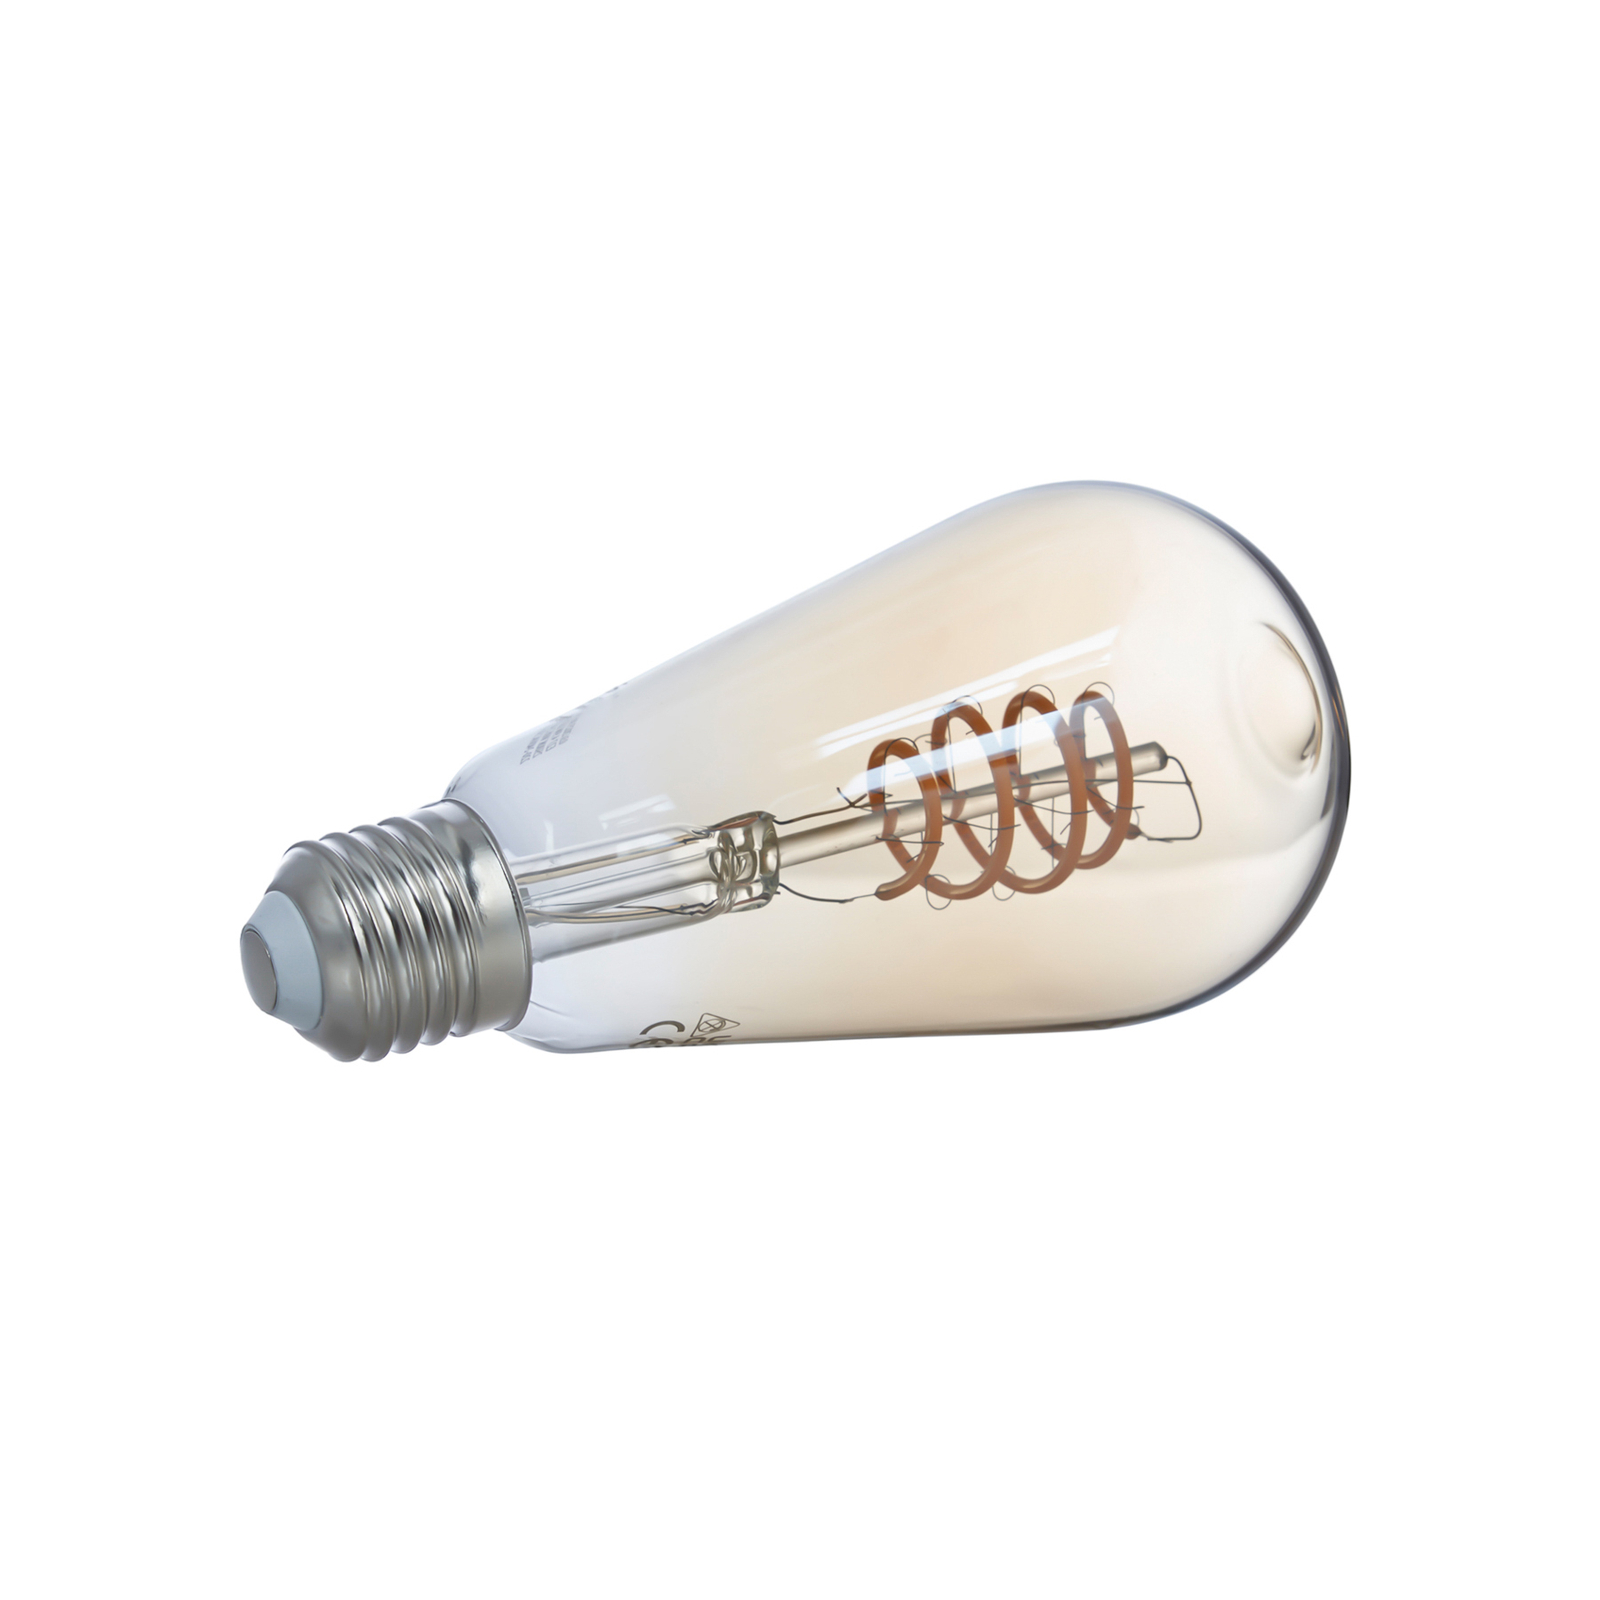 LUUMR Smart LED, 3 darabos készlet, E27, ST64, 4,9W, sárga, világos, Tuya